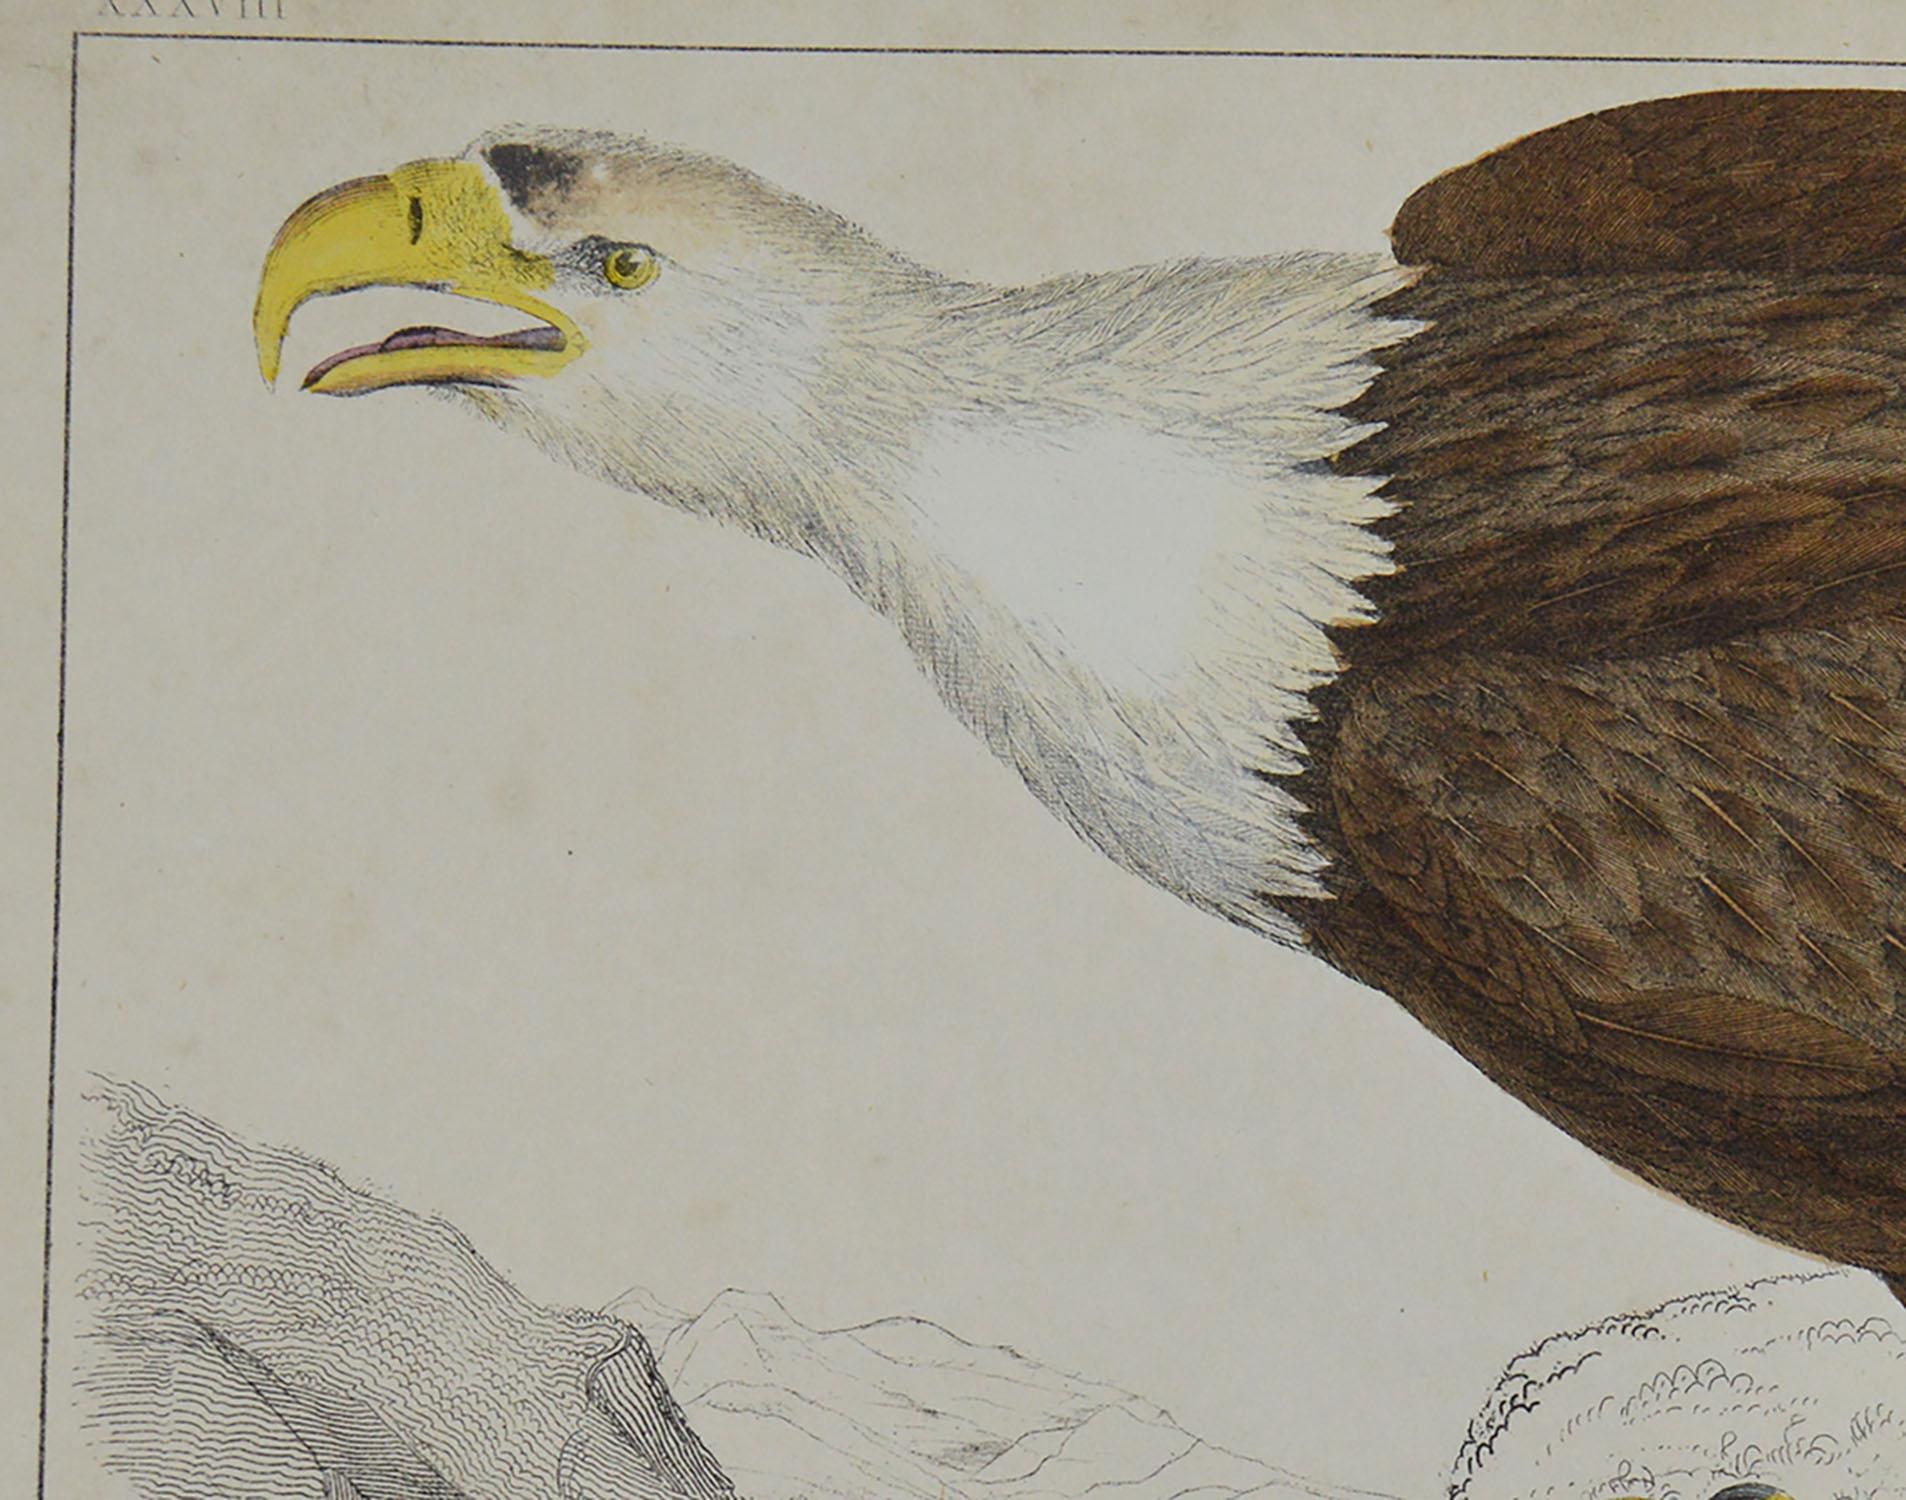 Folk Art Original Antique Print of an Eagle, 1847 'Unframed'